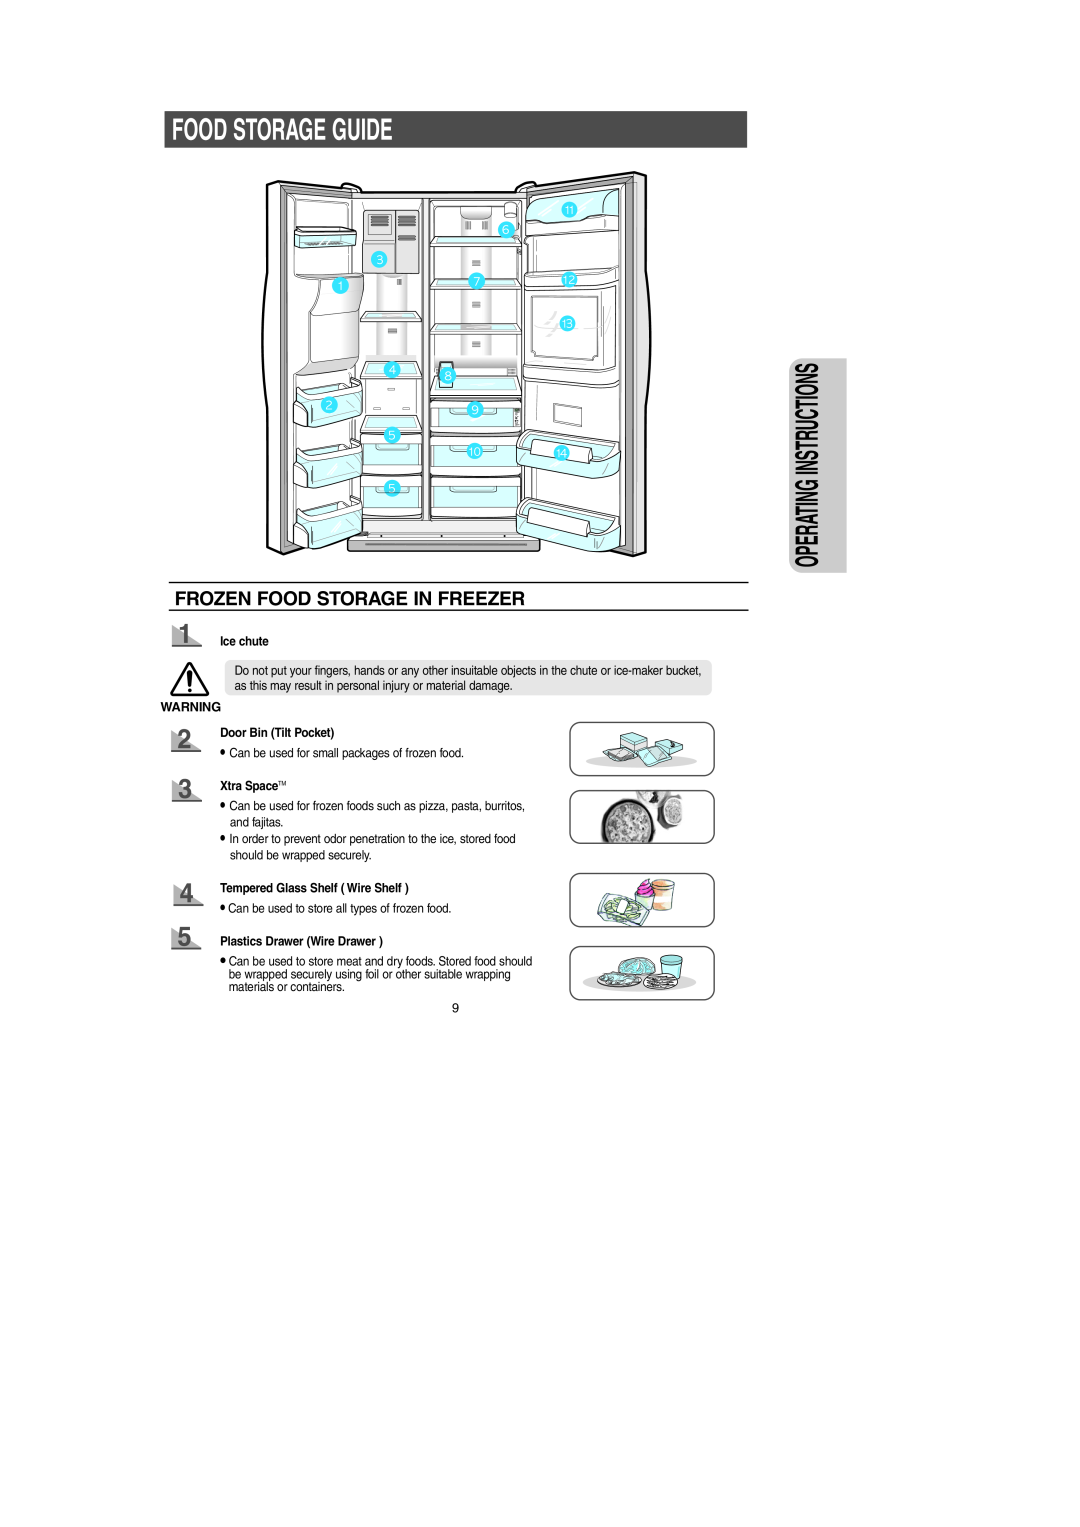 Samsung RS2534BB Food Storage Guide, Frozen Food Storage In Freezer, Ice chute, Door Bin Tilt Pocket, Xtra SpaceTM 